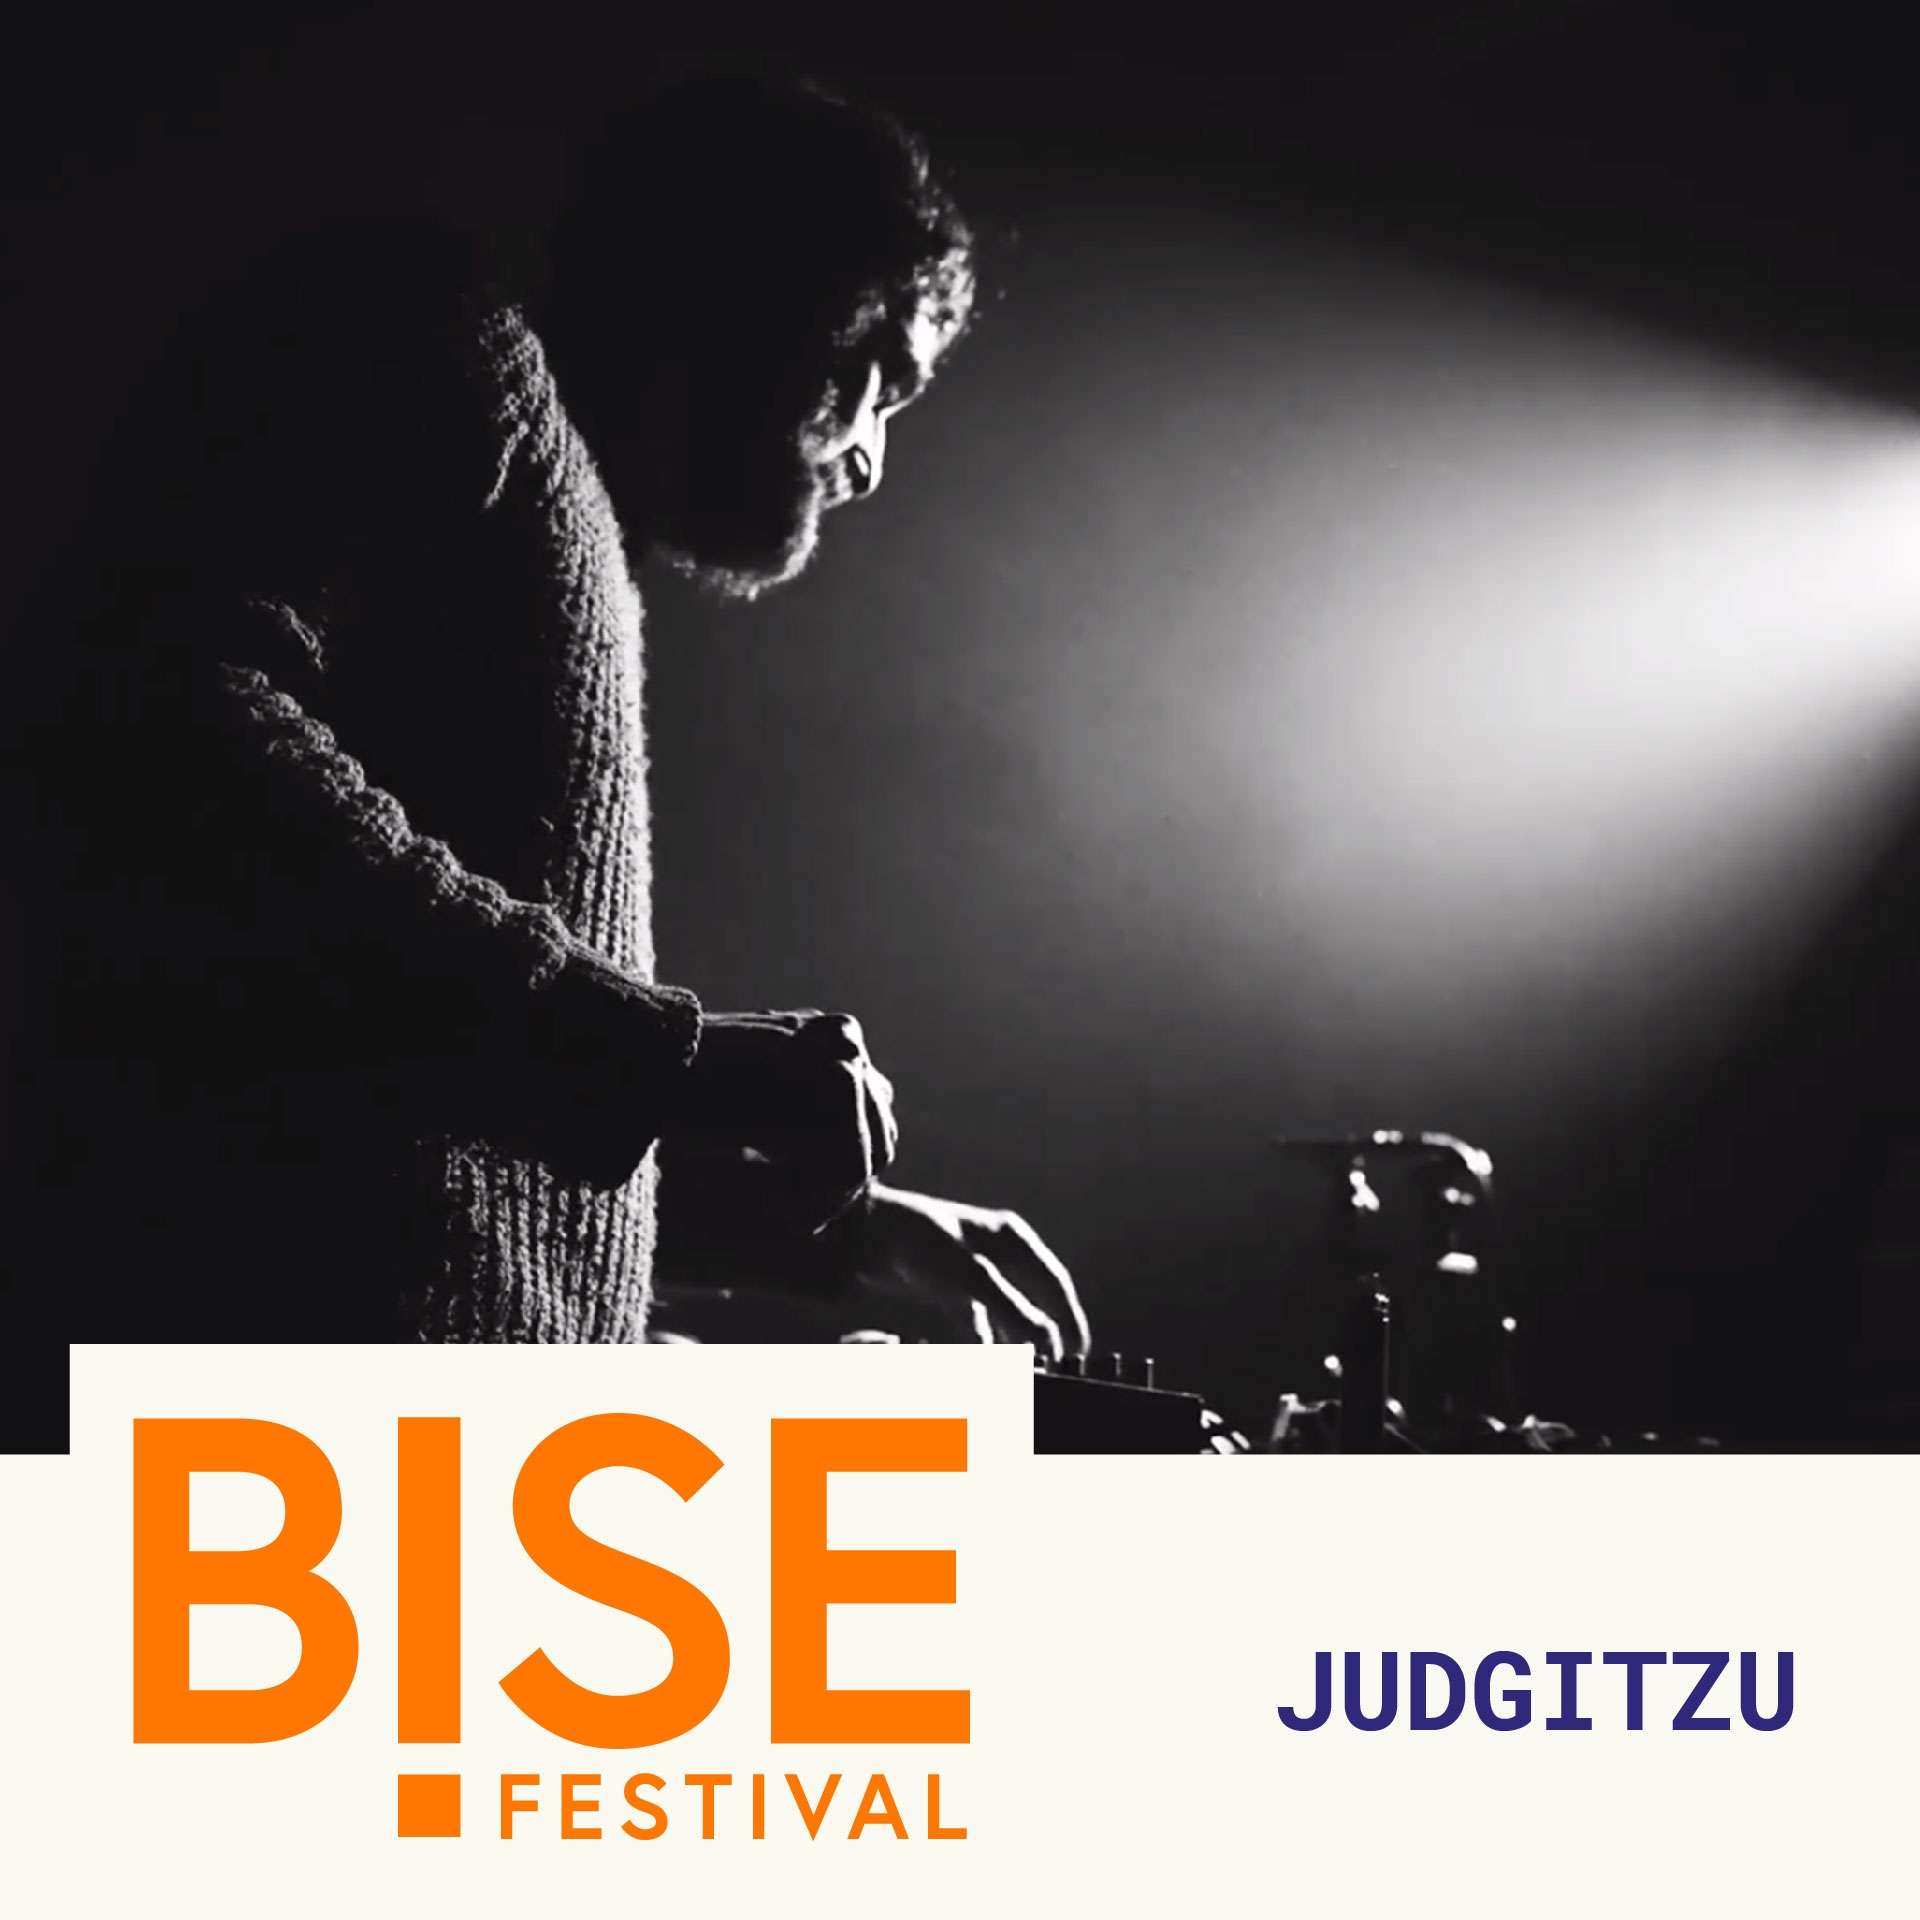 Judgitzu Bise Festival